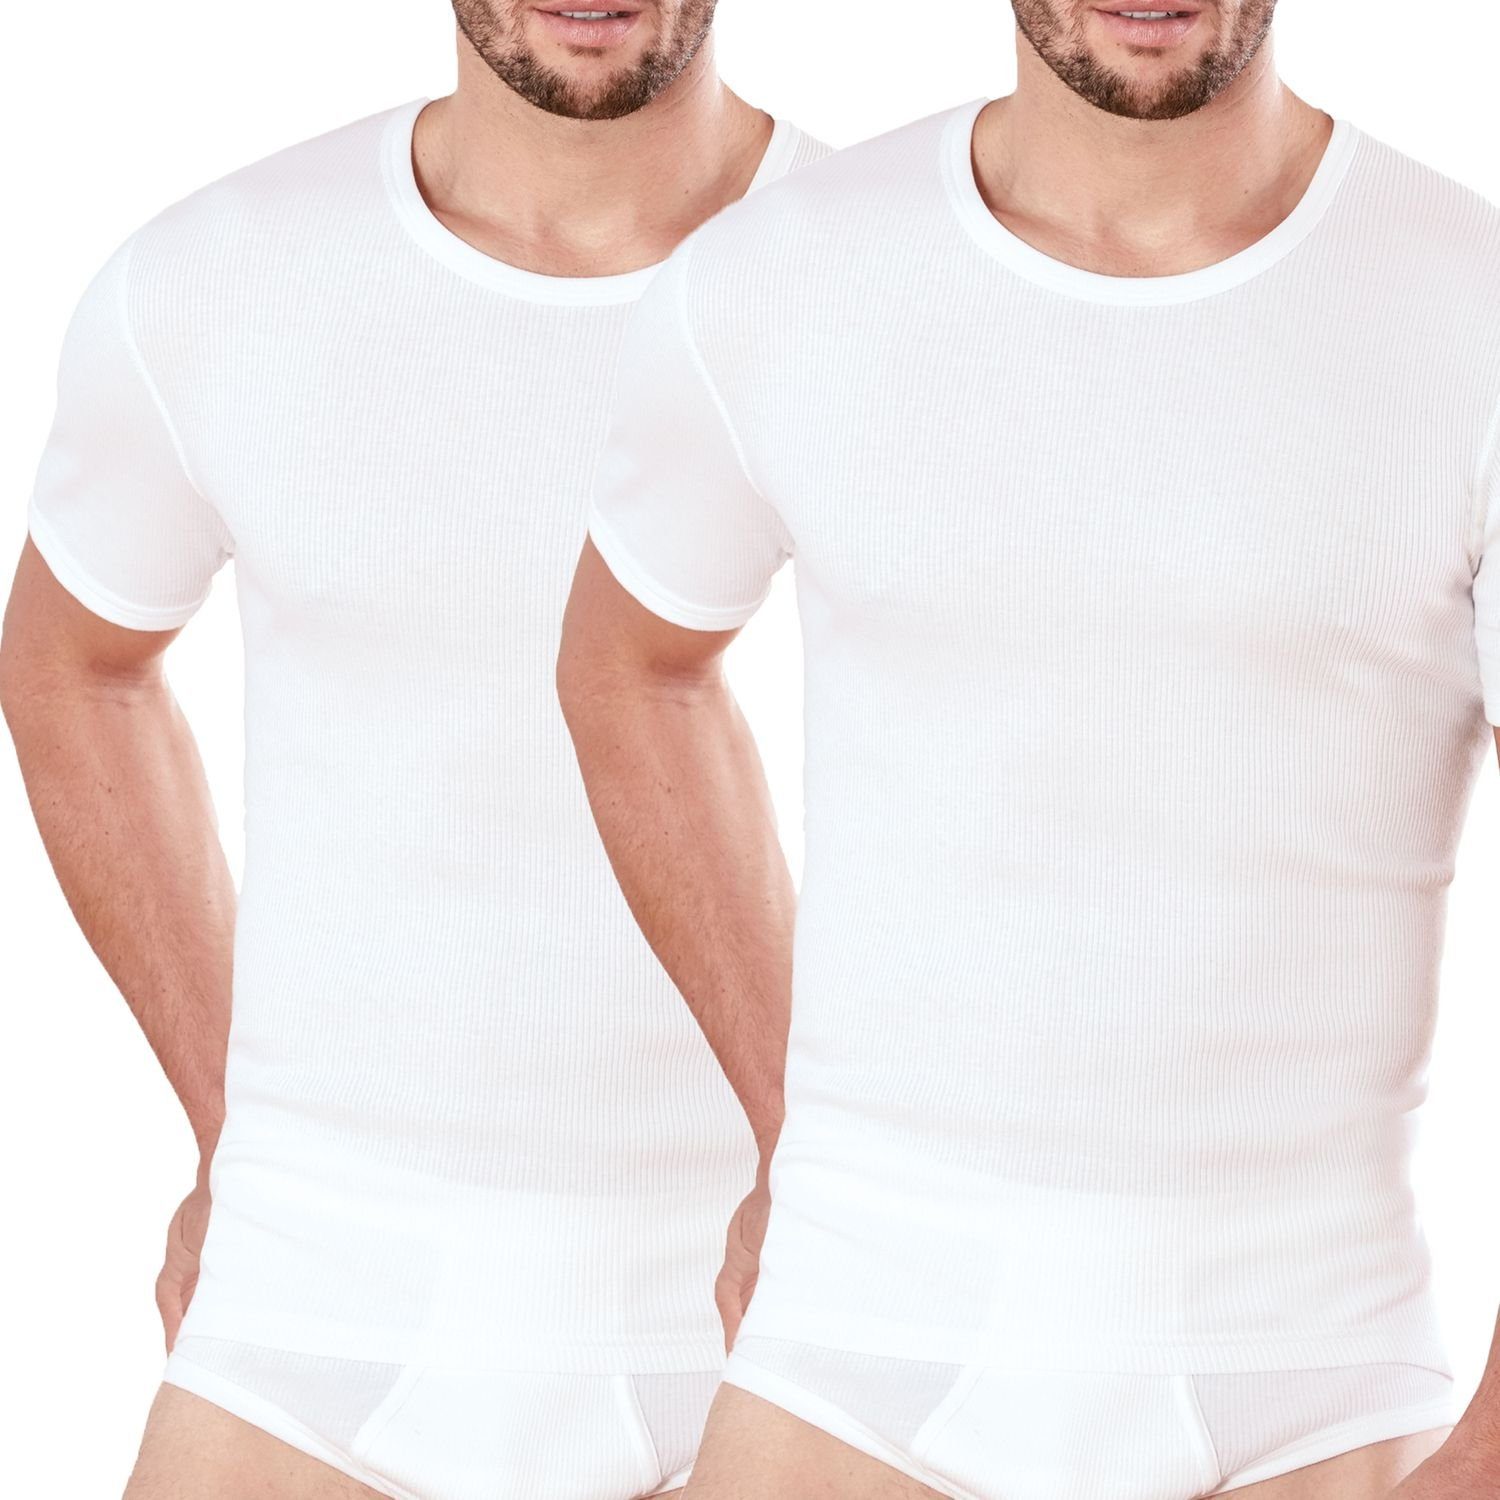 Ammann Unterhemd Doppelripp Exquisit (Mehrpack, 2-St., 2 Stück) kurzarm Herren Unterhemden im 2er Pack